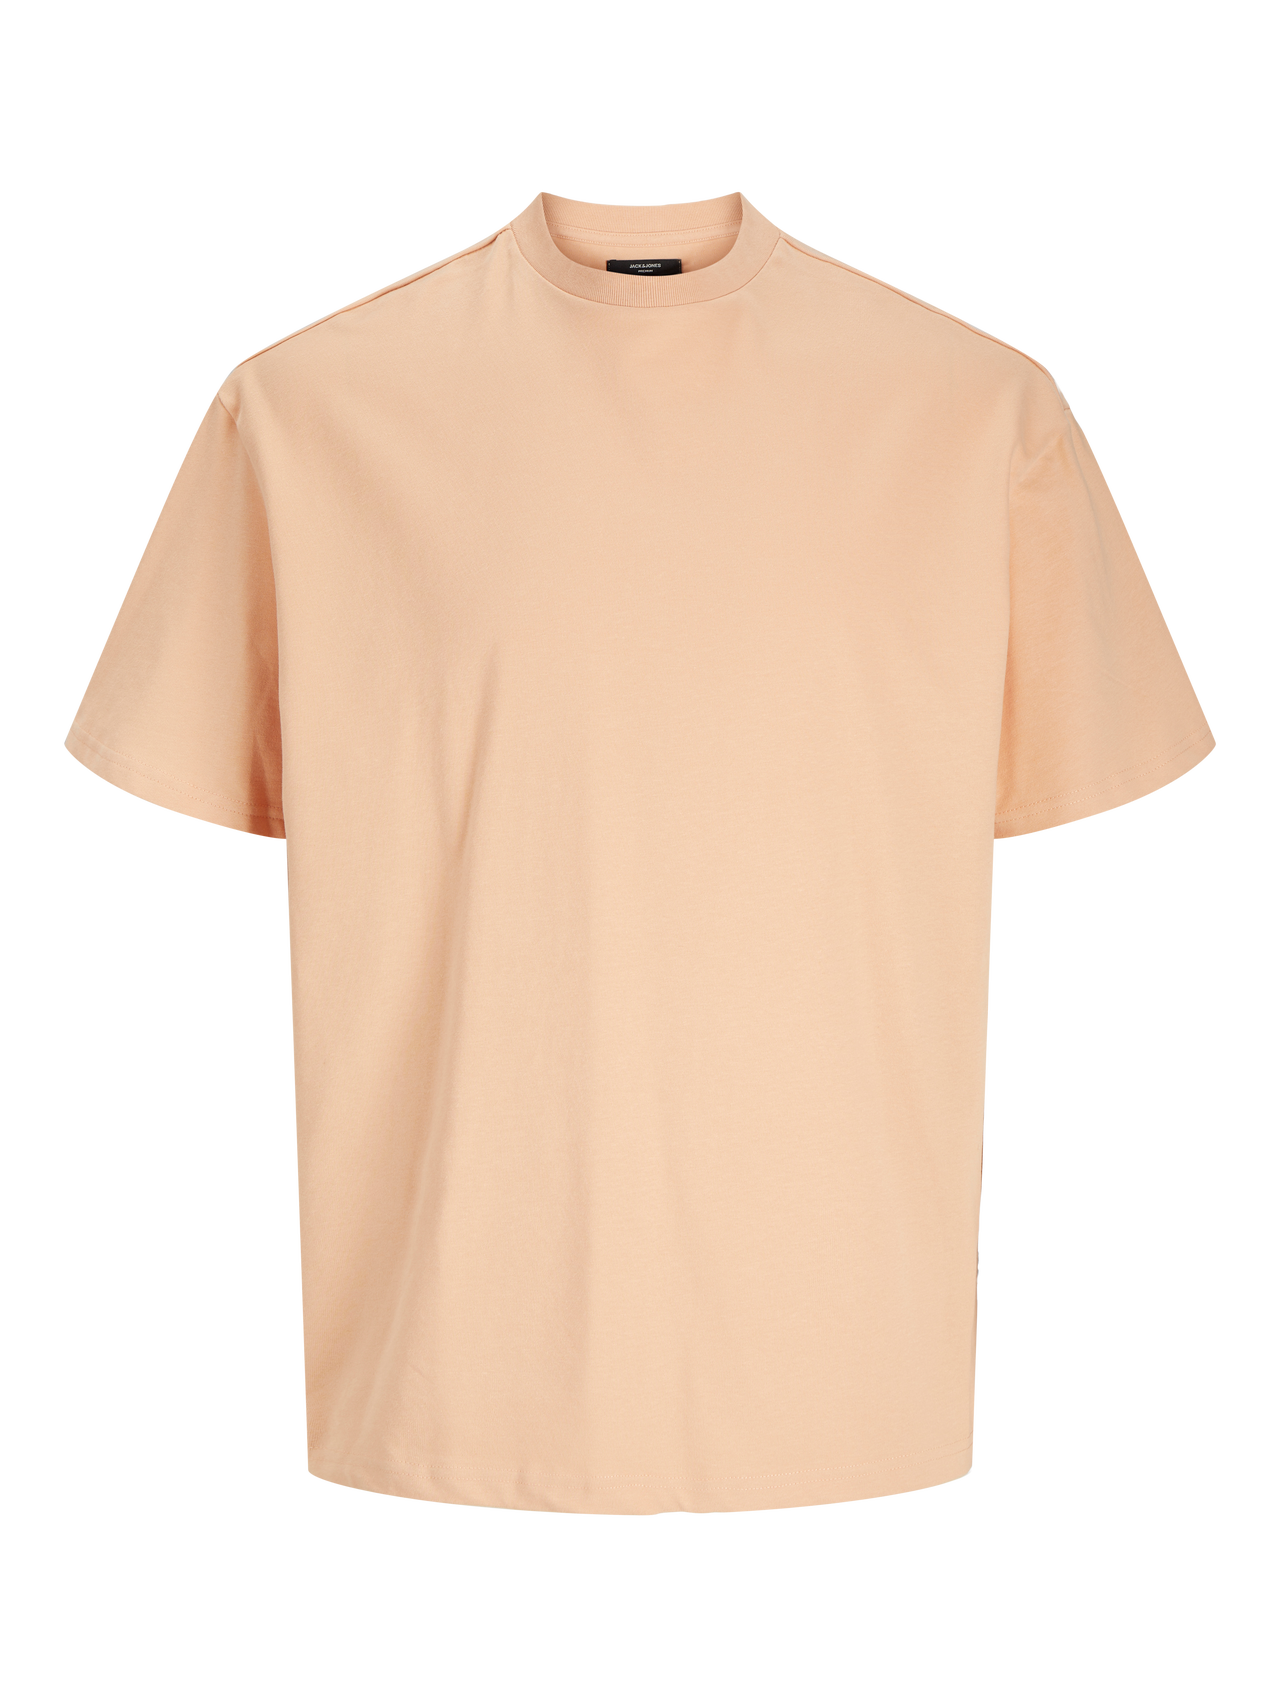 Jack & Jones Einfarbig Rundhals T-shirt -Peach Nougat  - 12255176